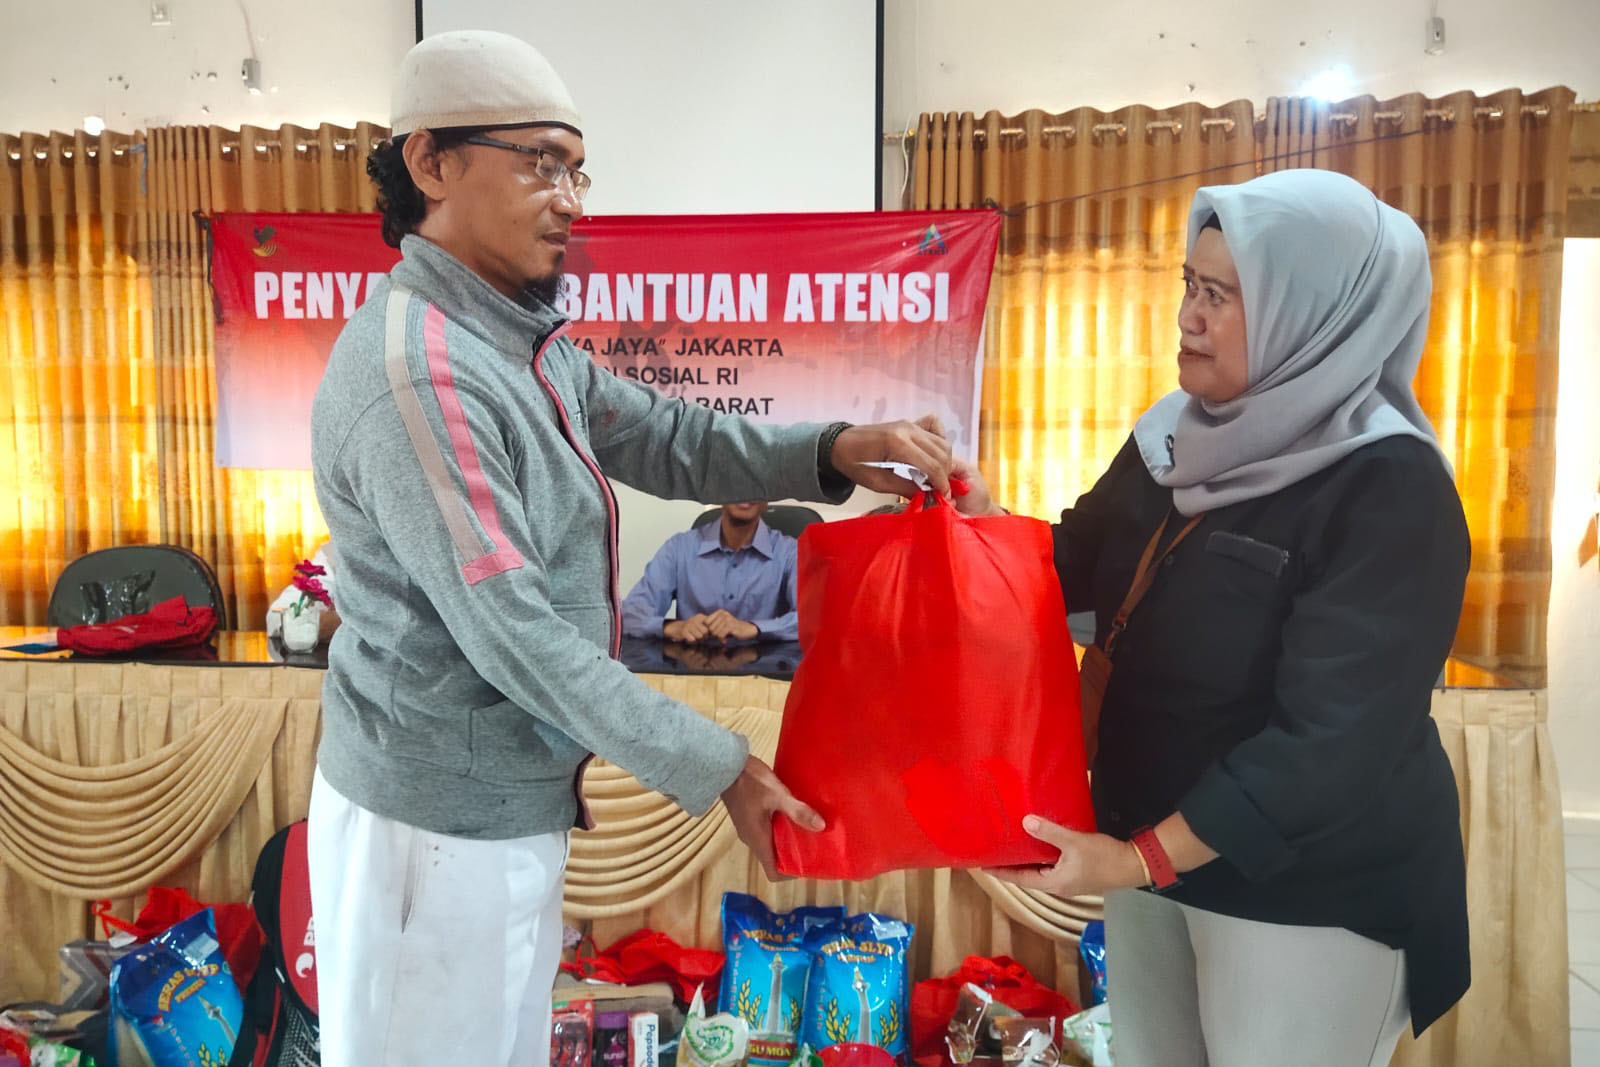 Semangat Hari Pahlawan, Sentra Mulya Jaya Berikan ATENSI Bagi 58 Disabilitas dan Eks KP Napza di Kab Bangka Barat